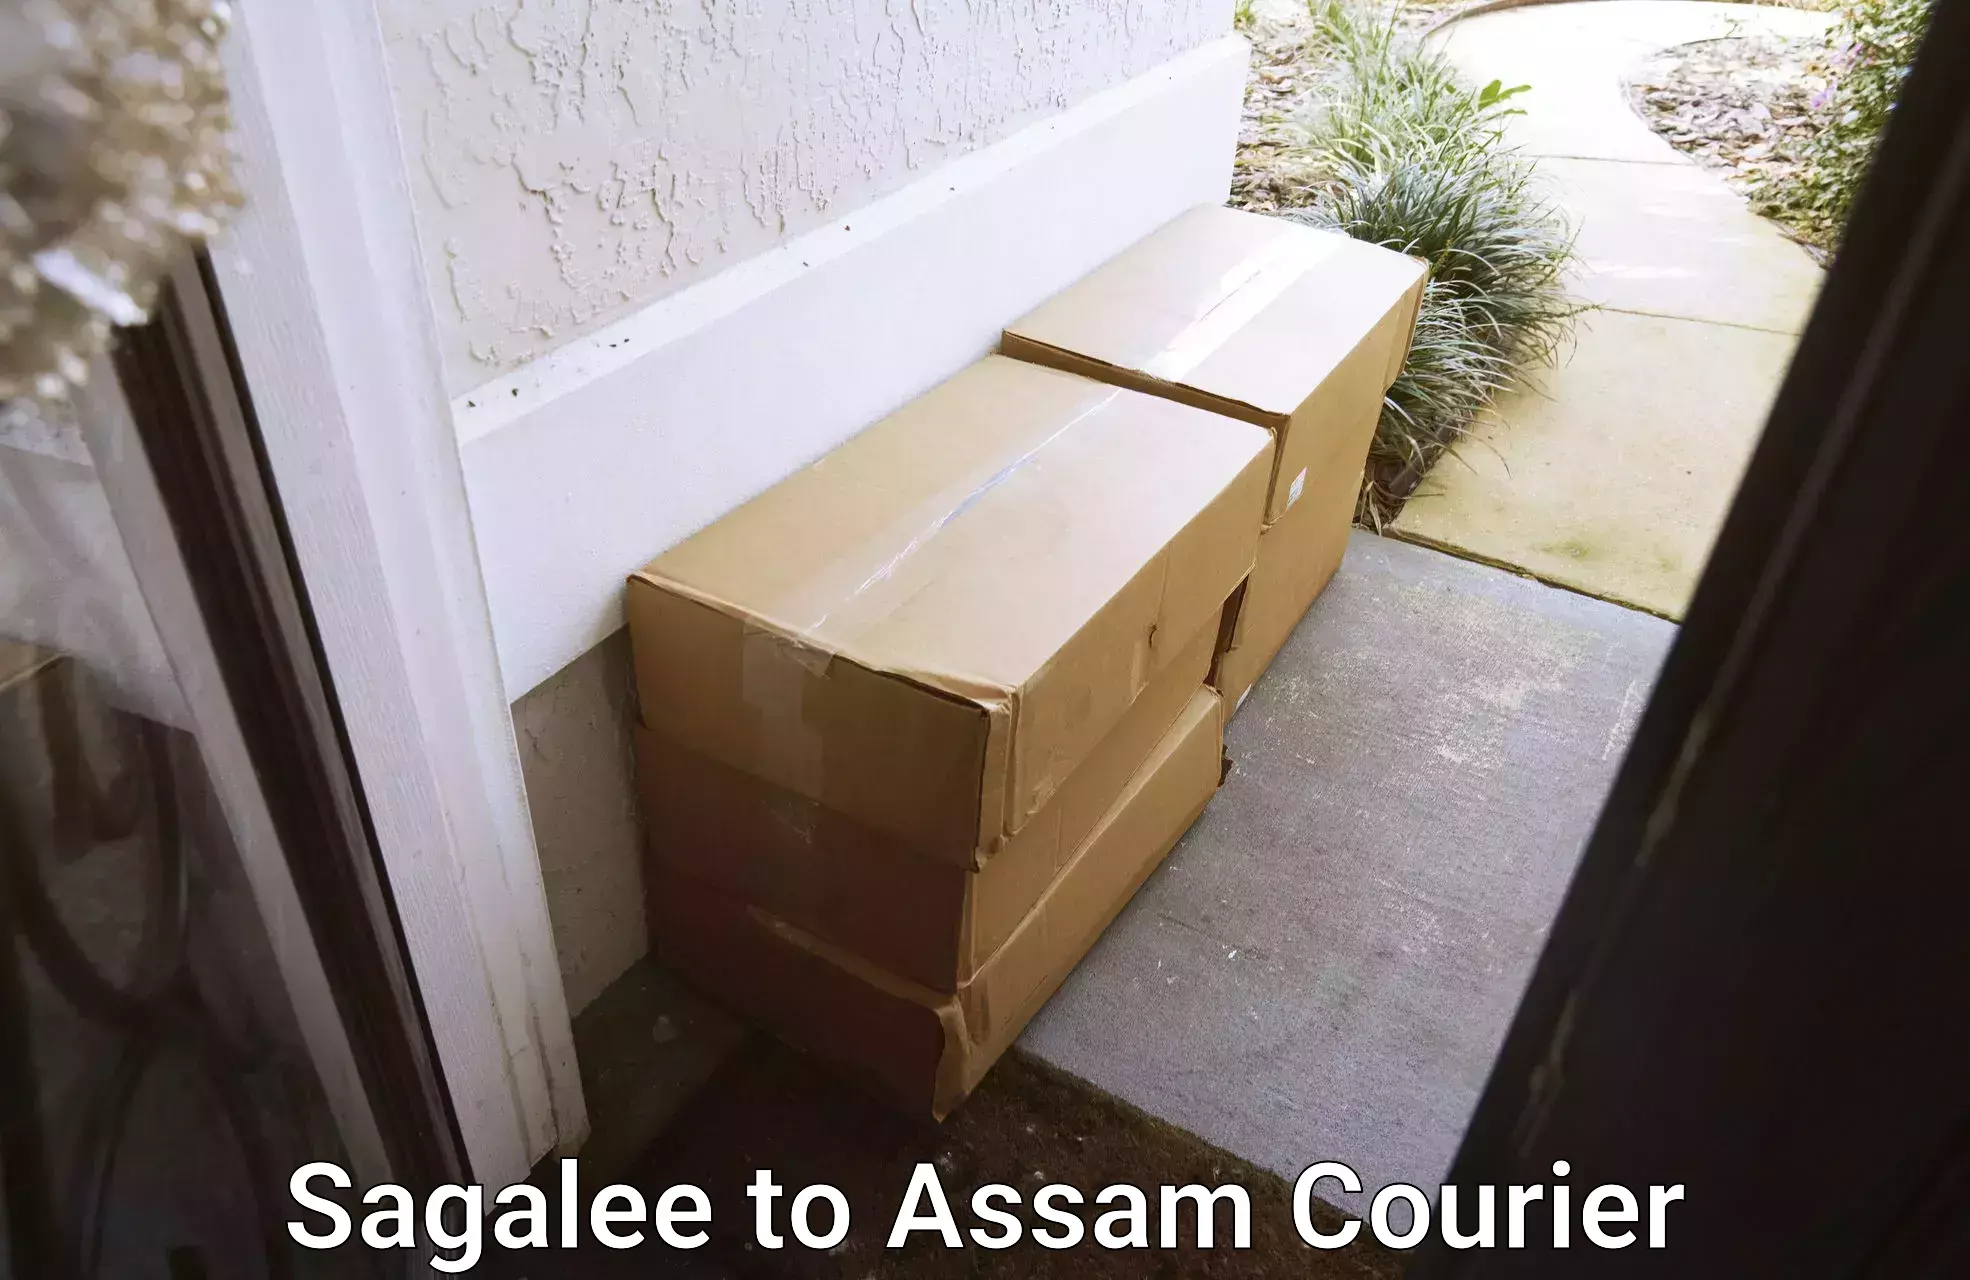 Urgent courier needs Sagalee to Assam